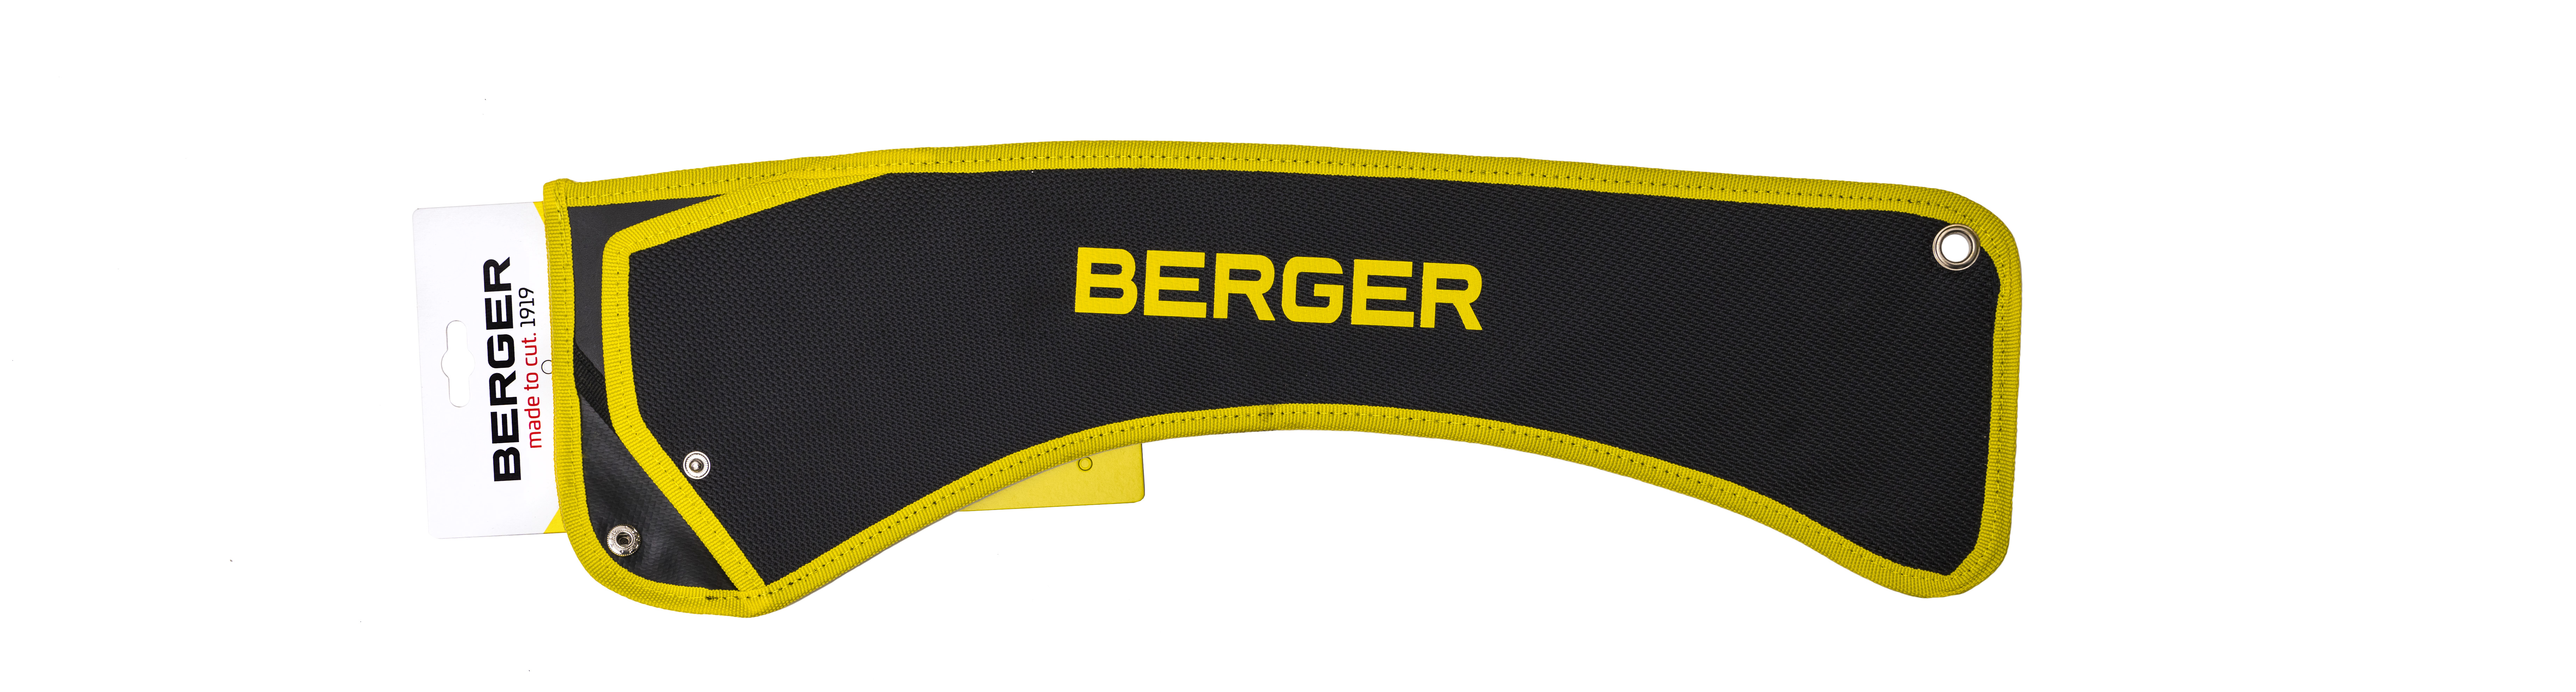 Berger Sägentasche 5129 